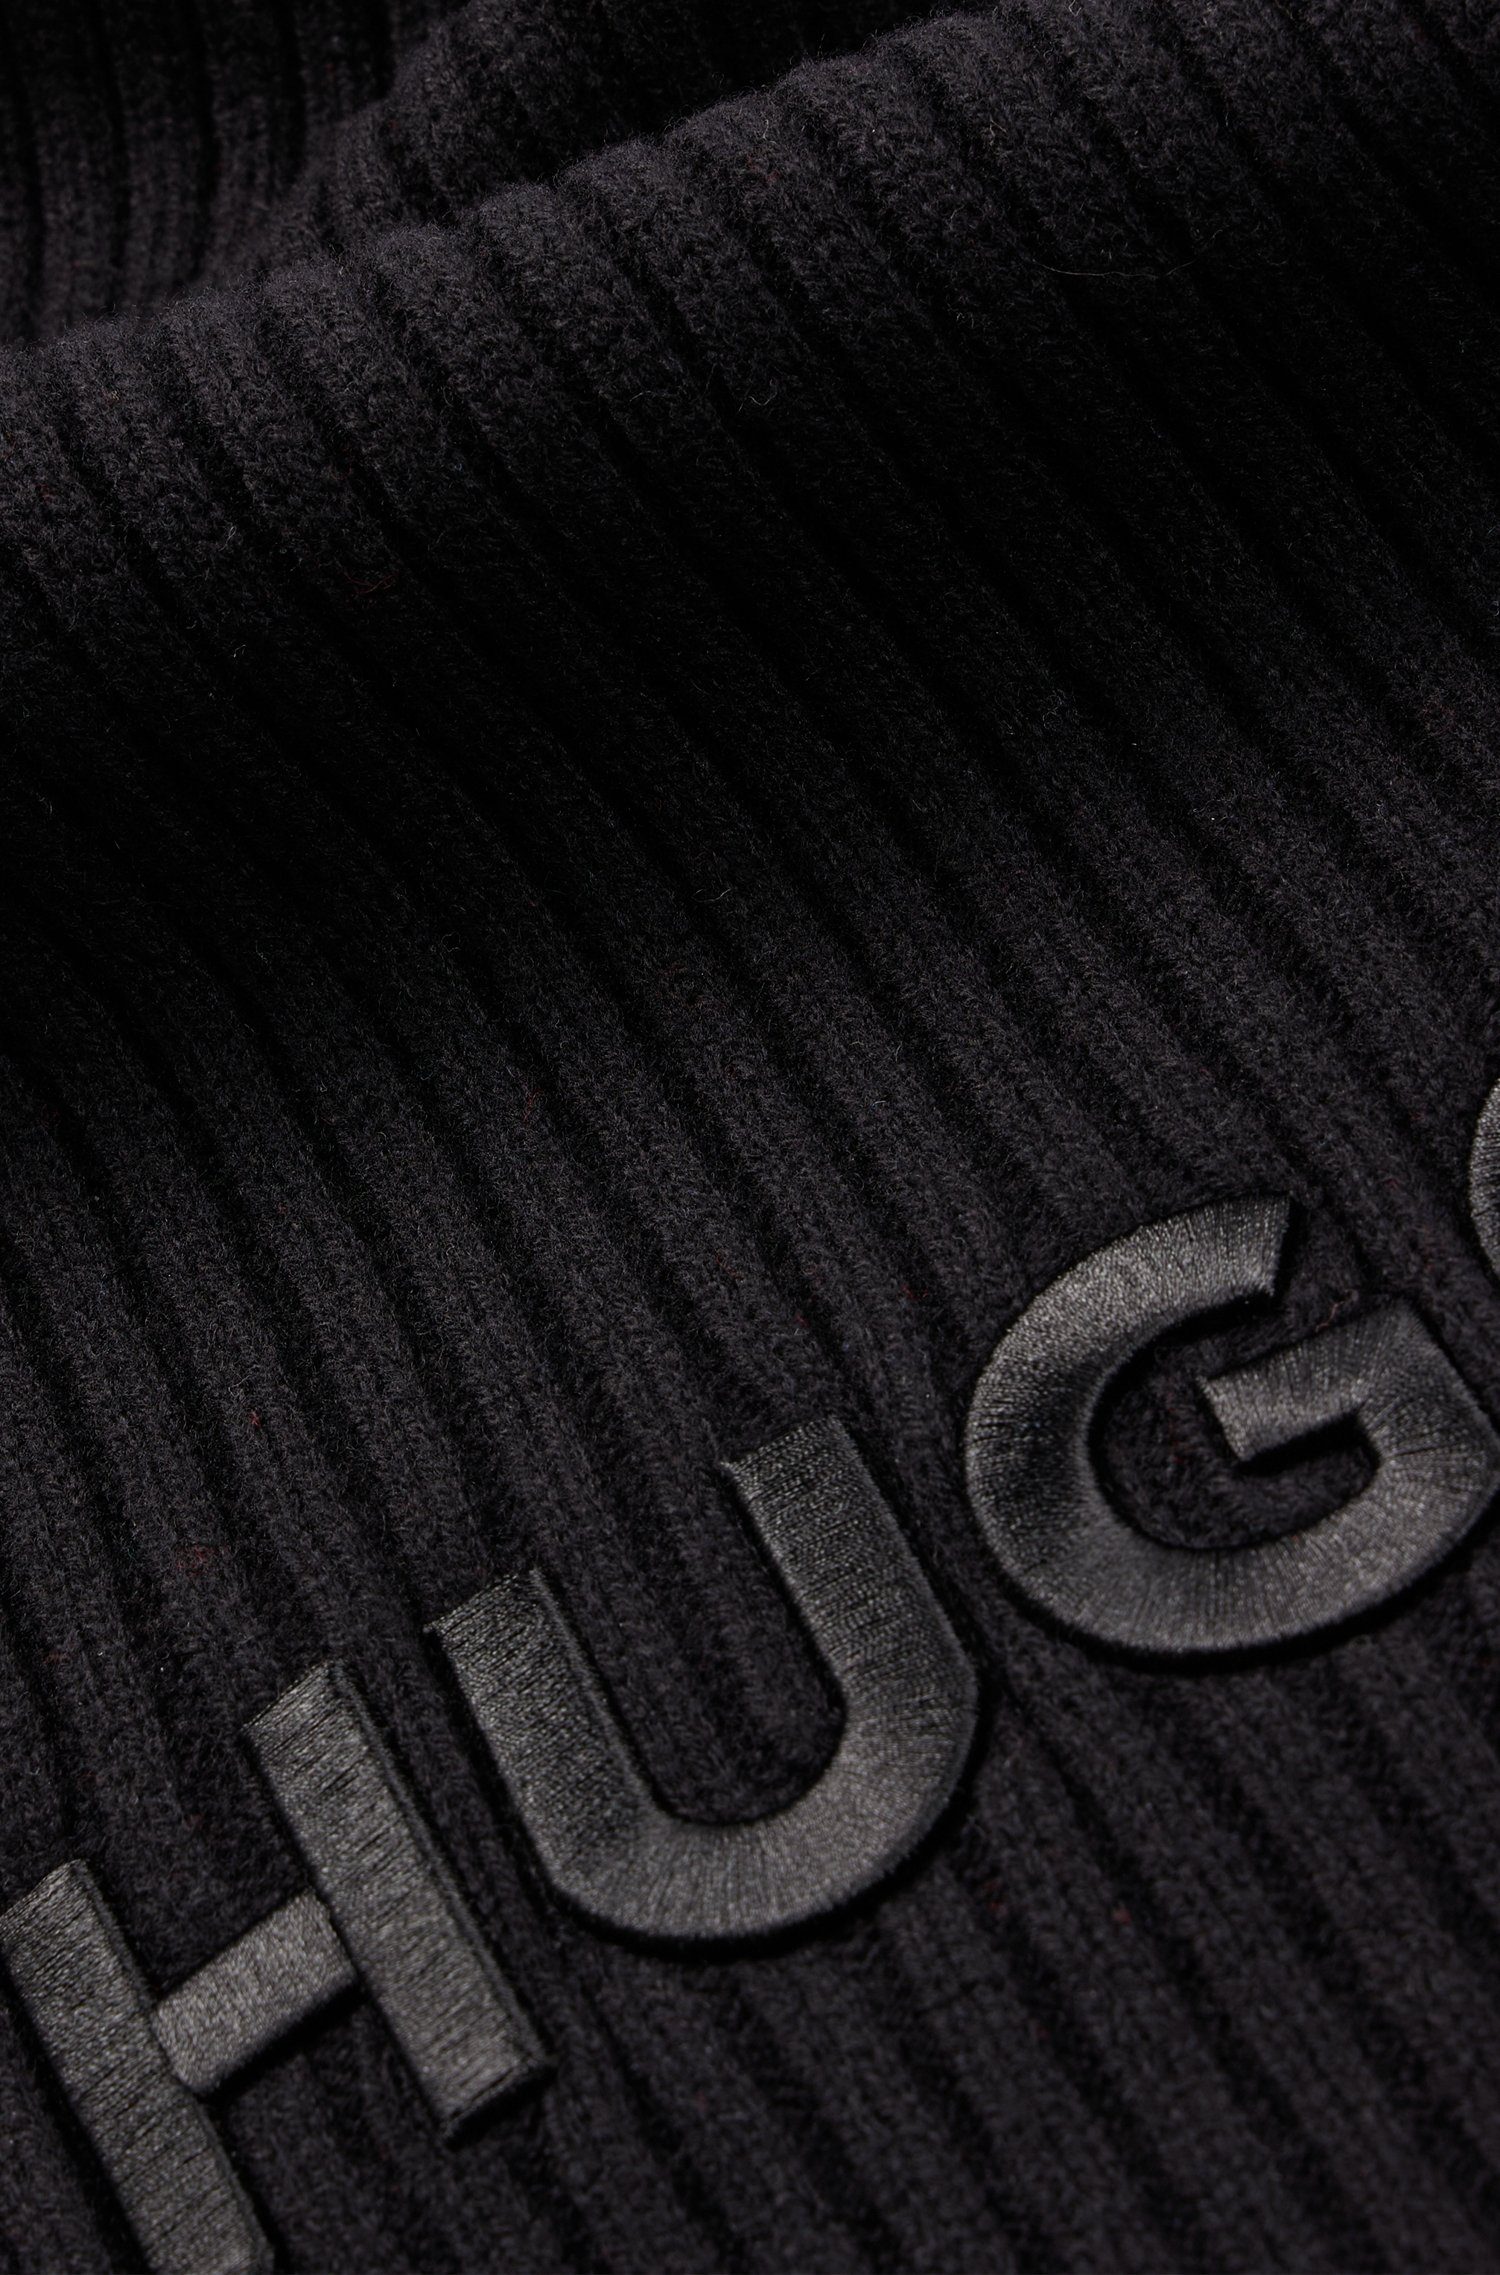 Zunio-1, Schal mit HUGO HUGO-Logoschriftzug Black